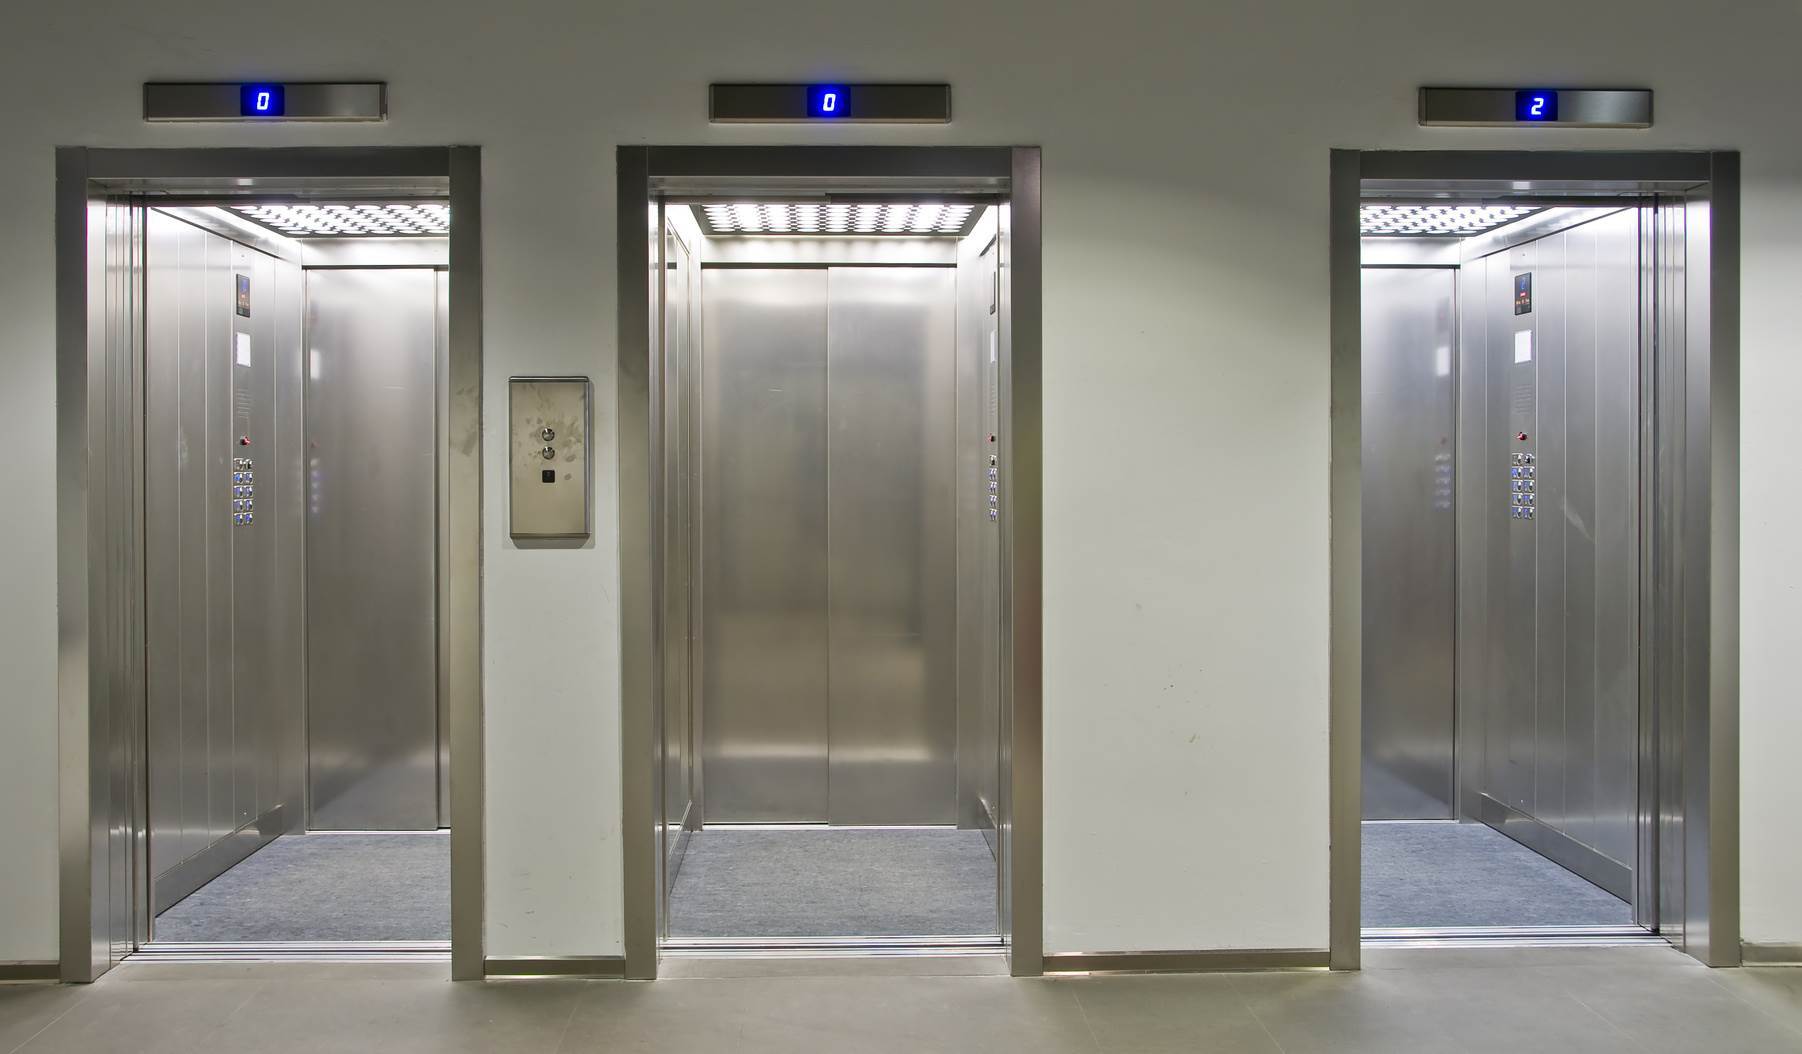 ۷۶ گواهی تأییدیه ایمنی آسانسور در ایلام صادر شد